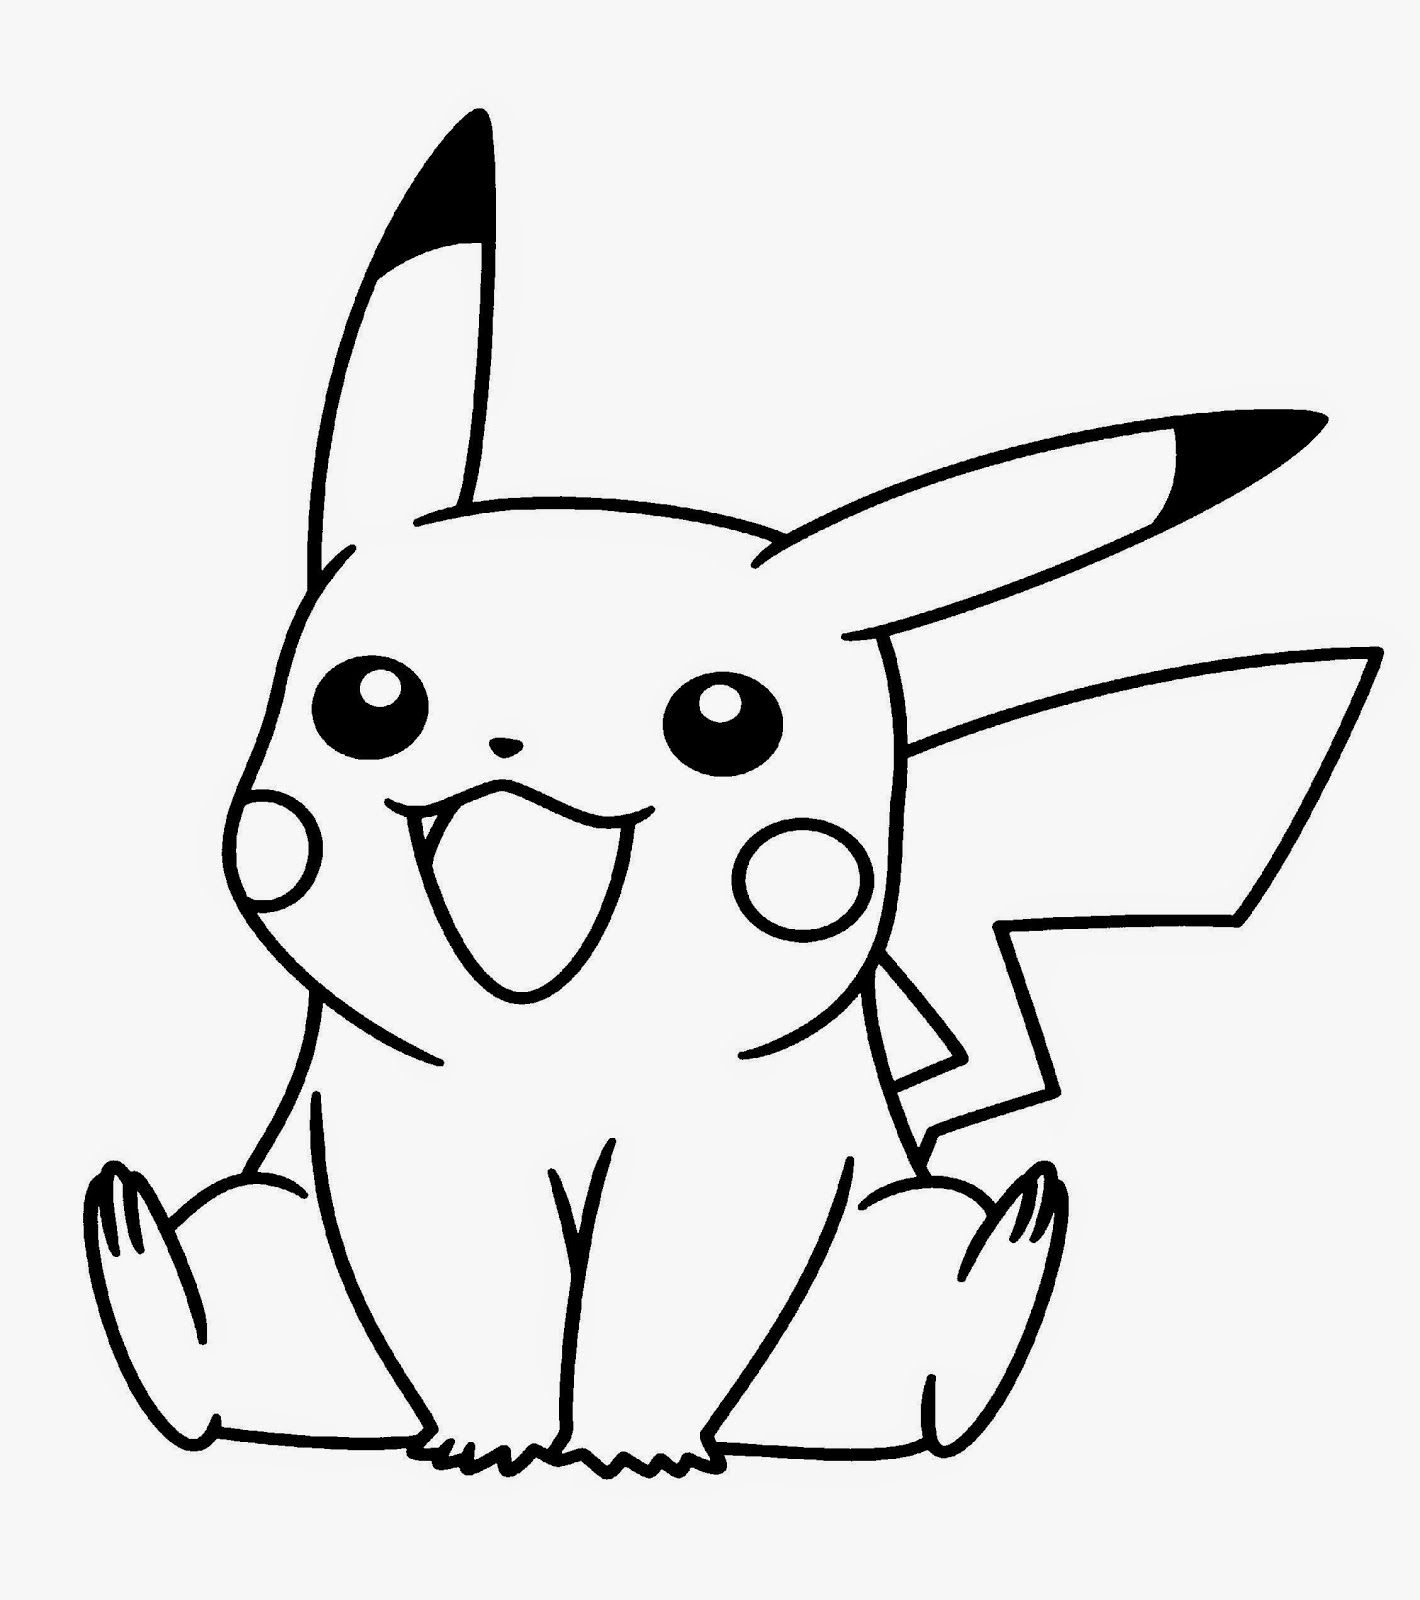 Pikachu Pokemon Coloring Pages Pdf - Draw-411